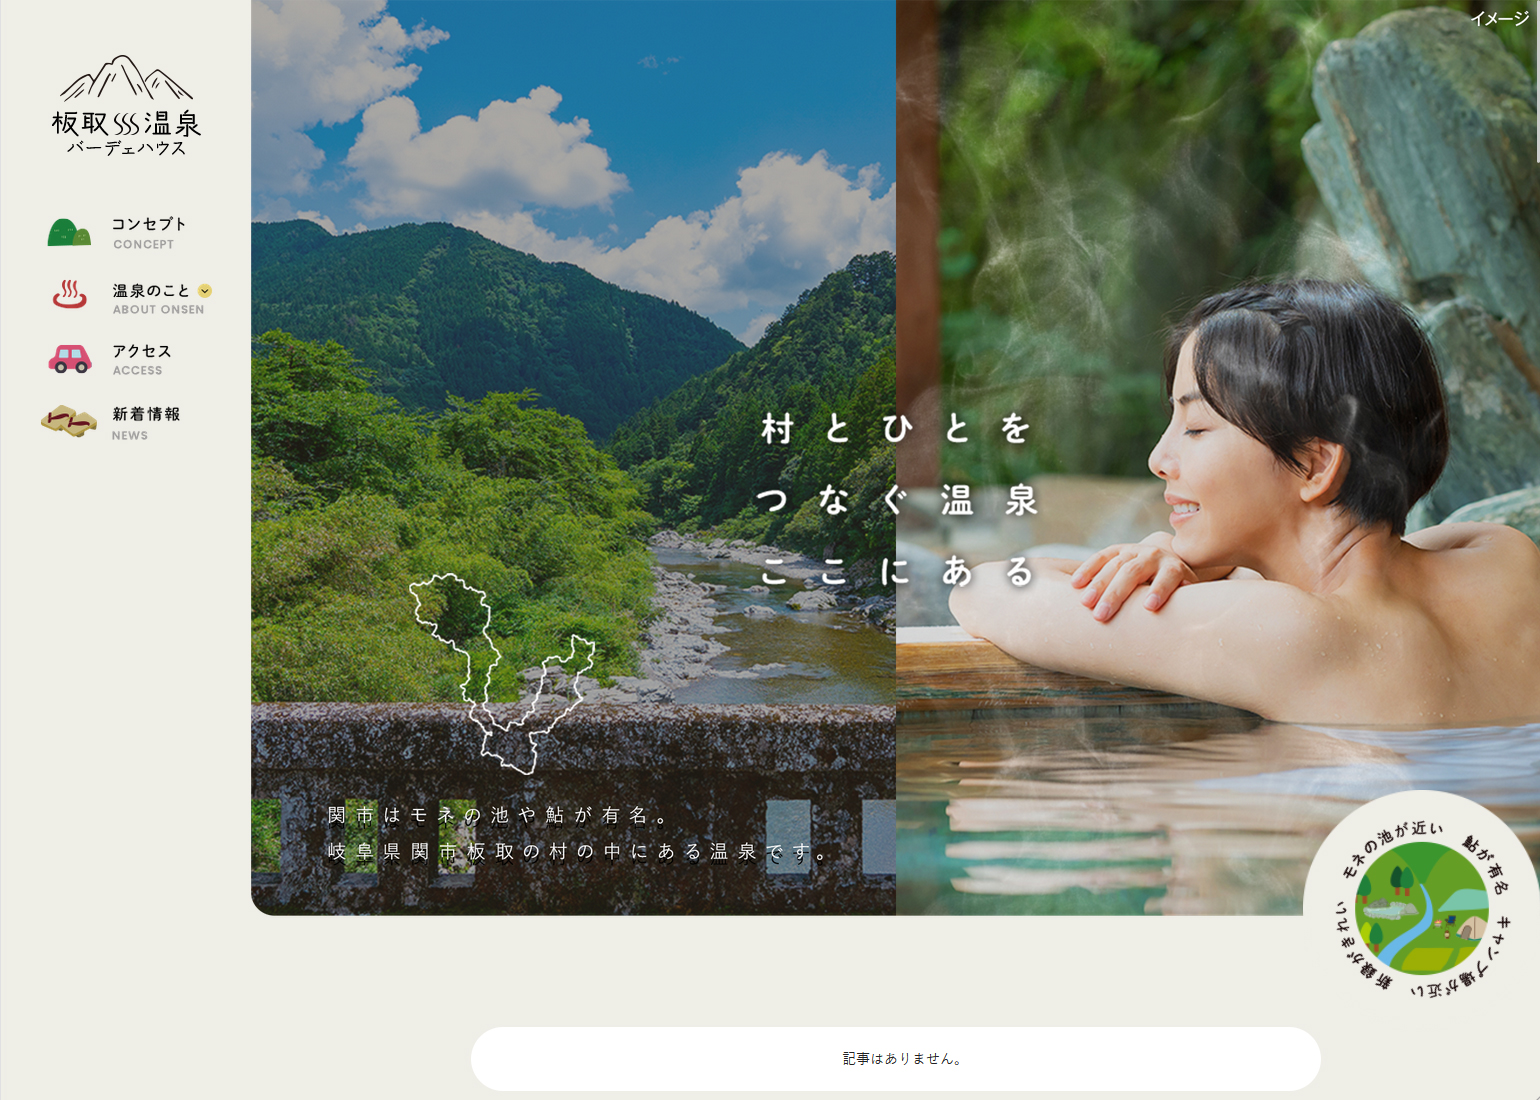 森林浴と温泉浴が楽しめる美肌の湯「板取川温泉バーデェハウス」